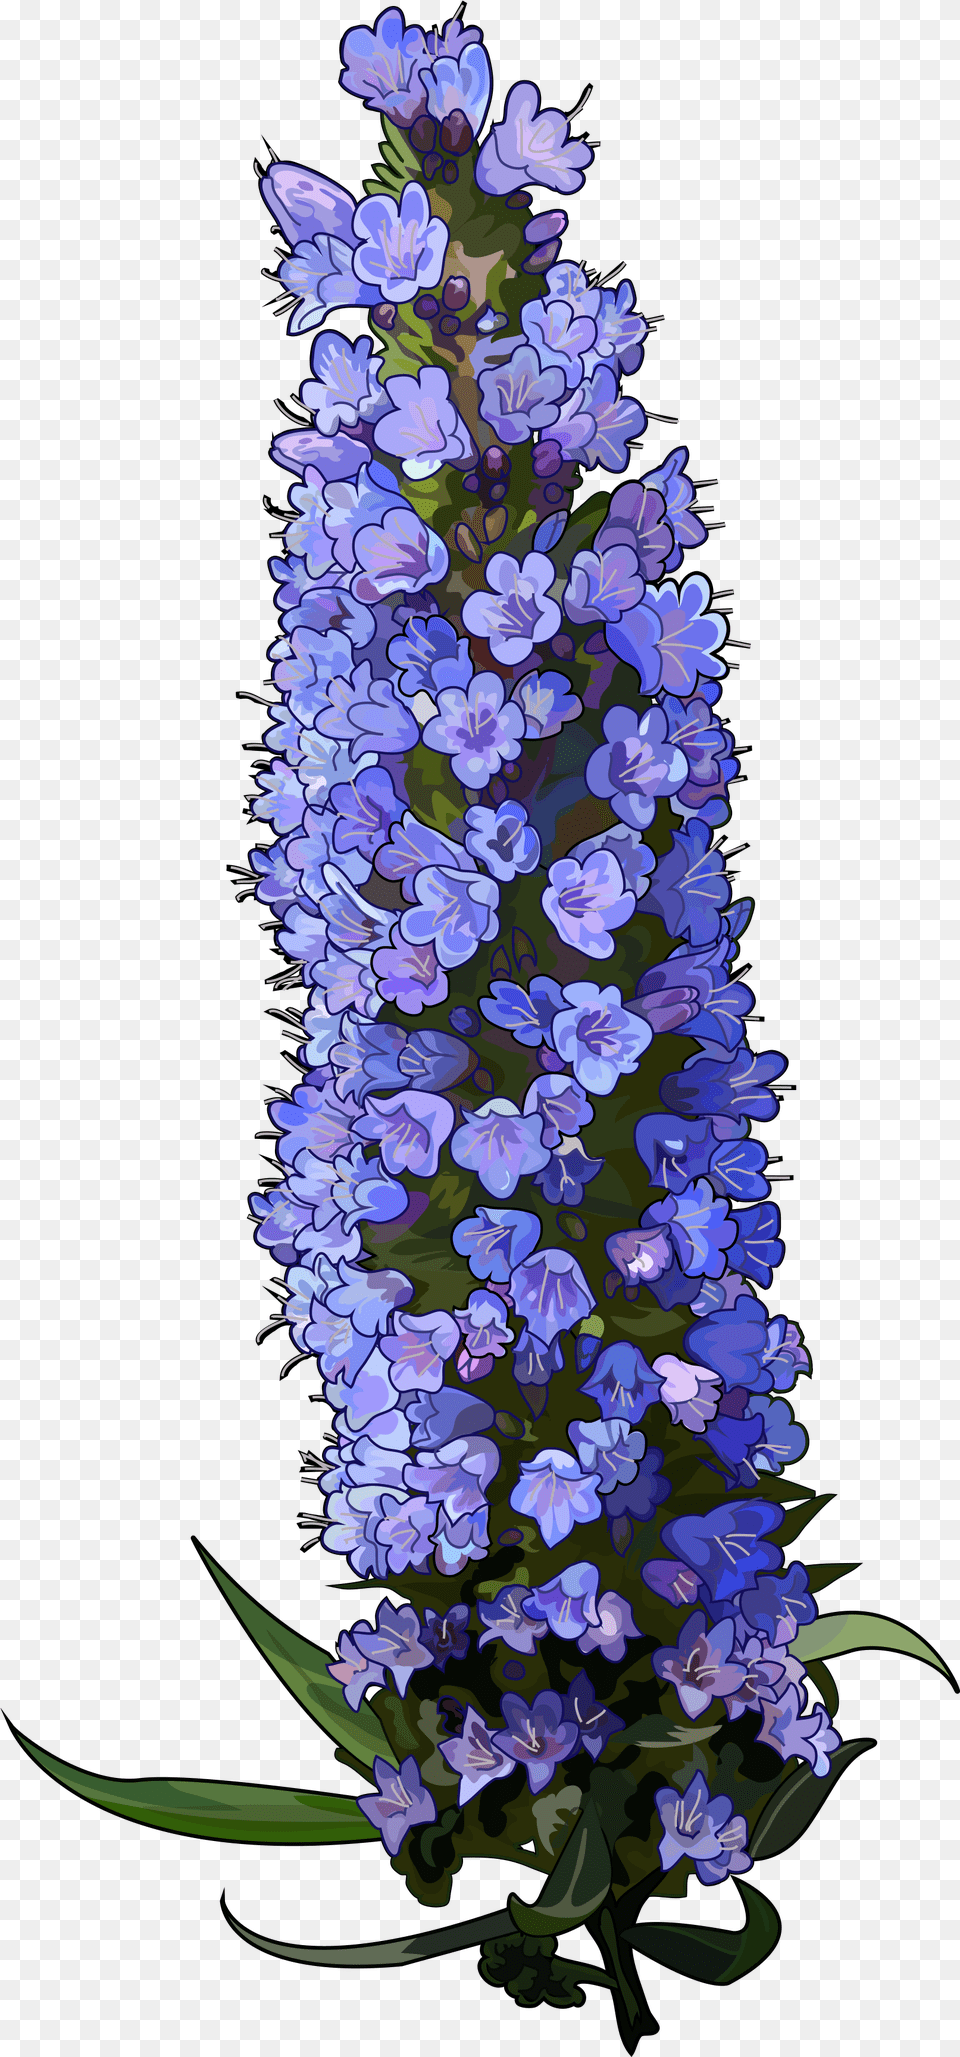 Texas Bluebonnet Download Bluebonnet, Flower, Lupin, Plant, Flower Arrangement Free Transparent Png